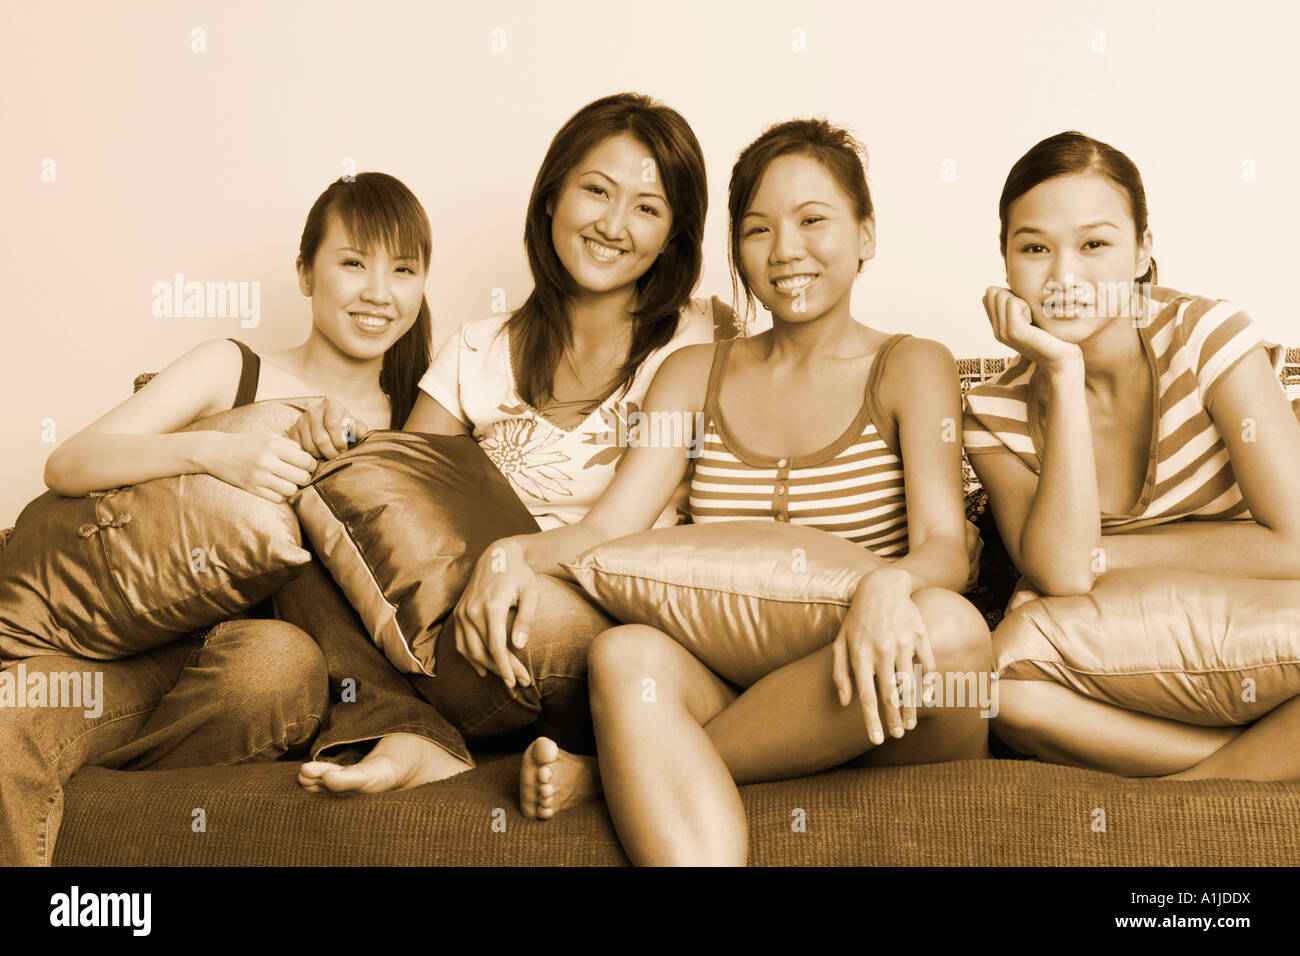 Portrait de quatre jeunes femmes assises sur un canapé et souriant Banque D'Images